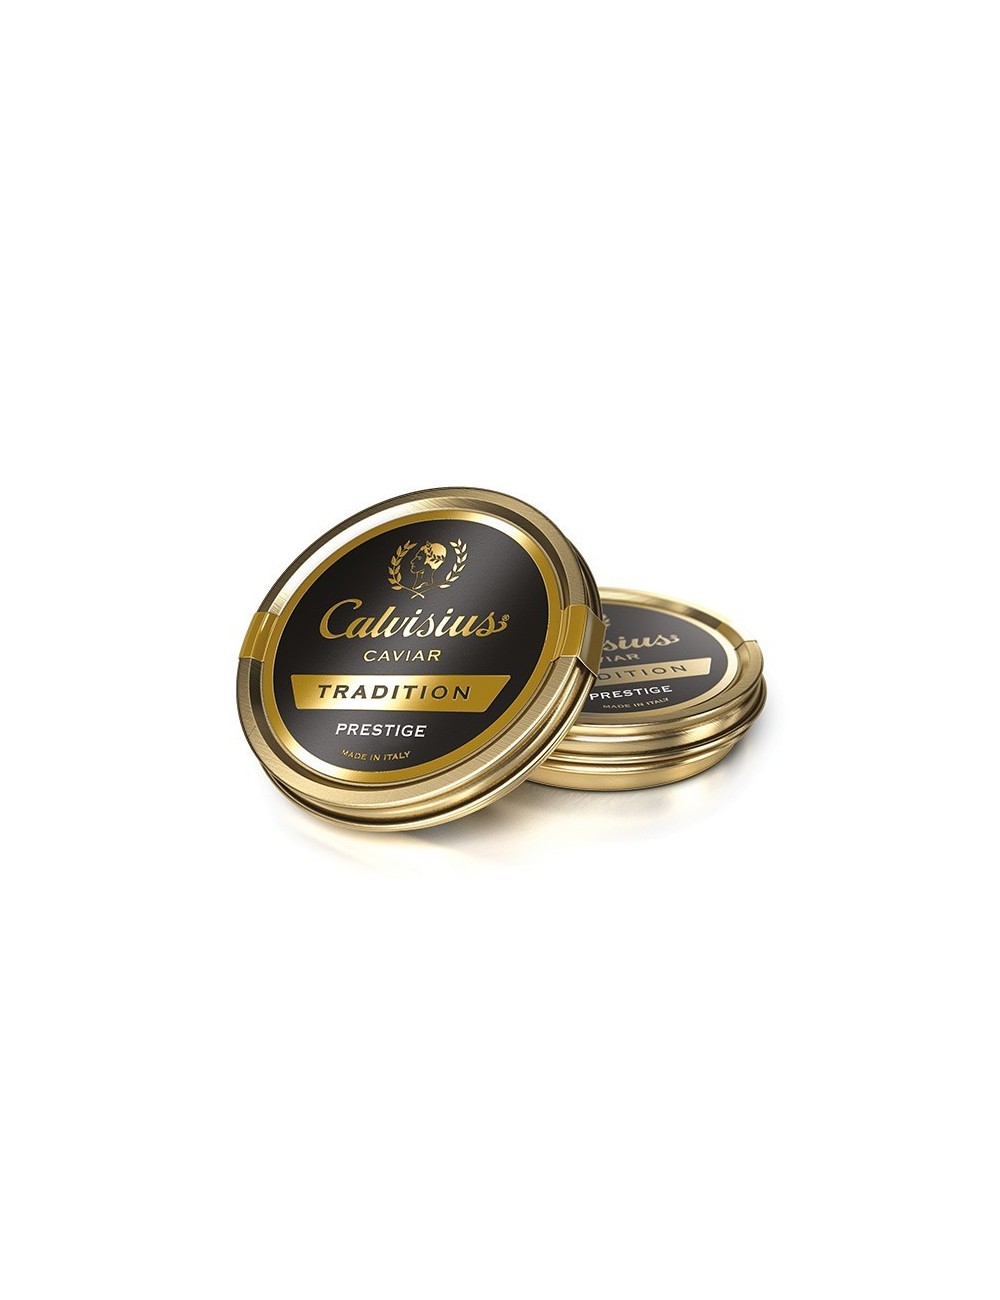 Achat Caviar Calvisius Tradition Prestige 50 gr 